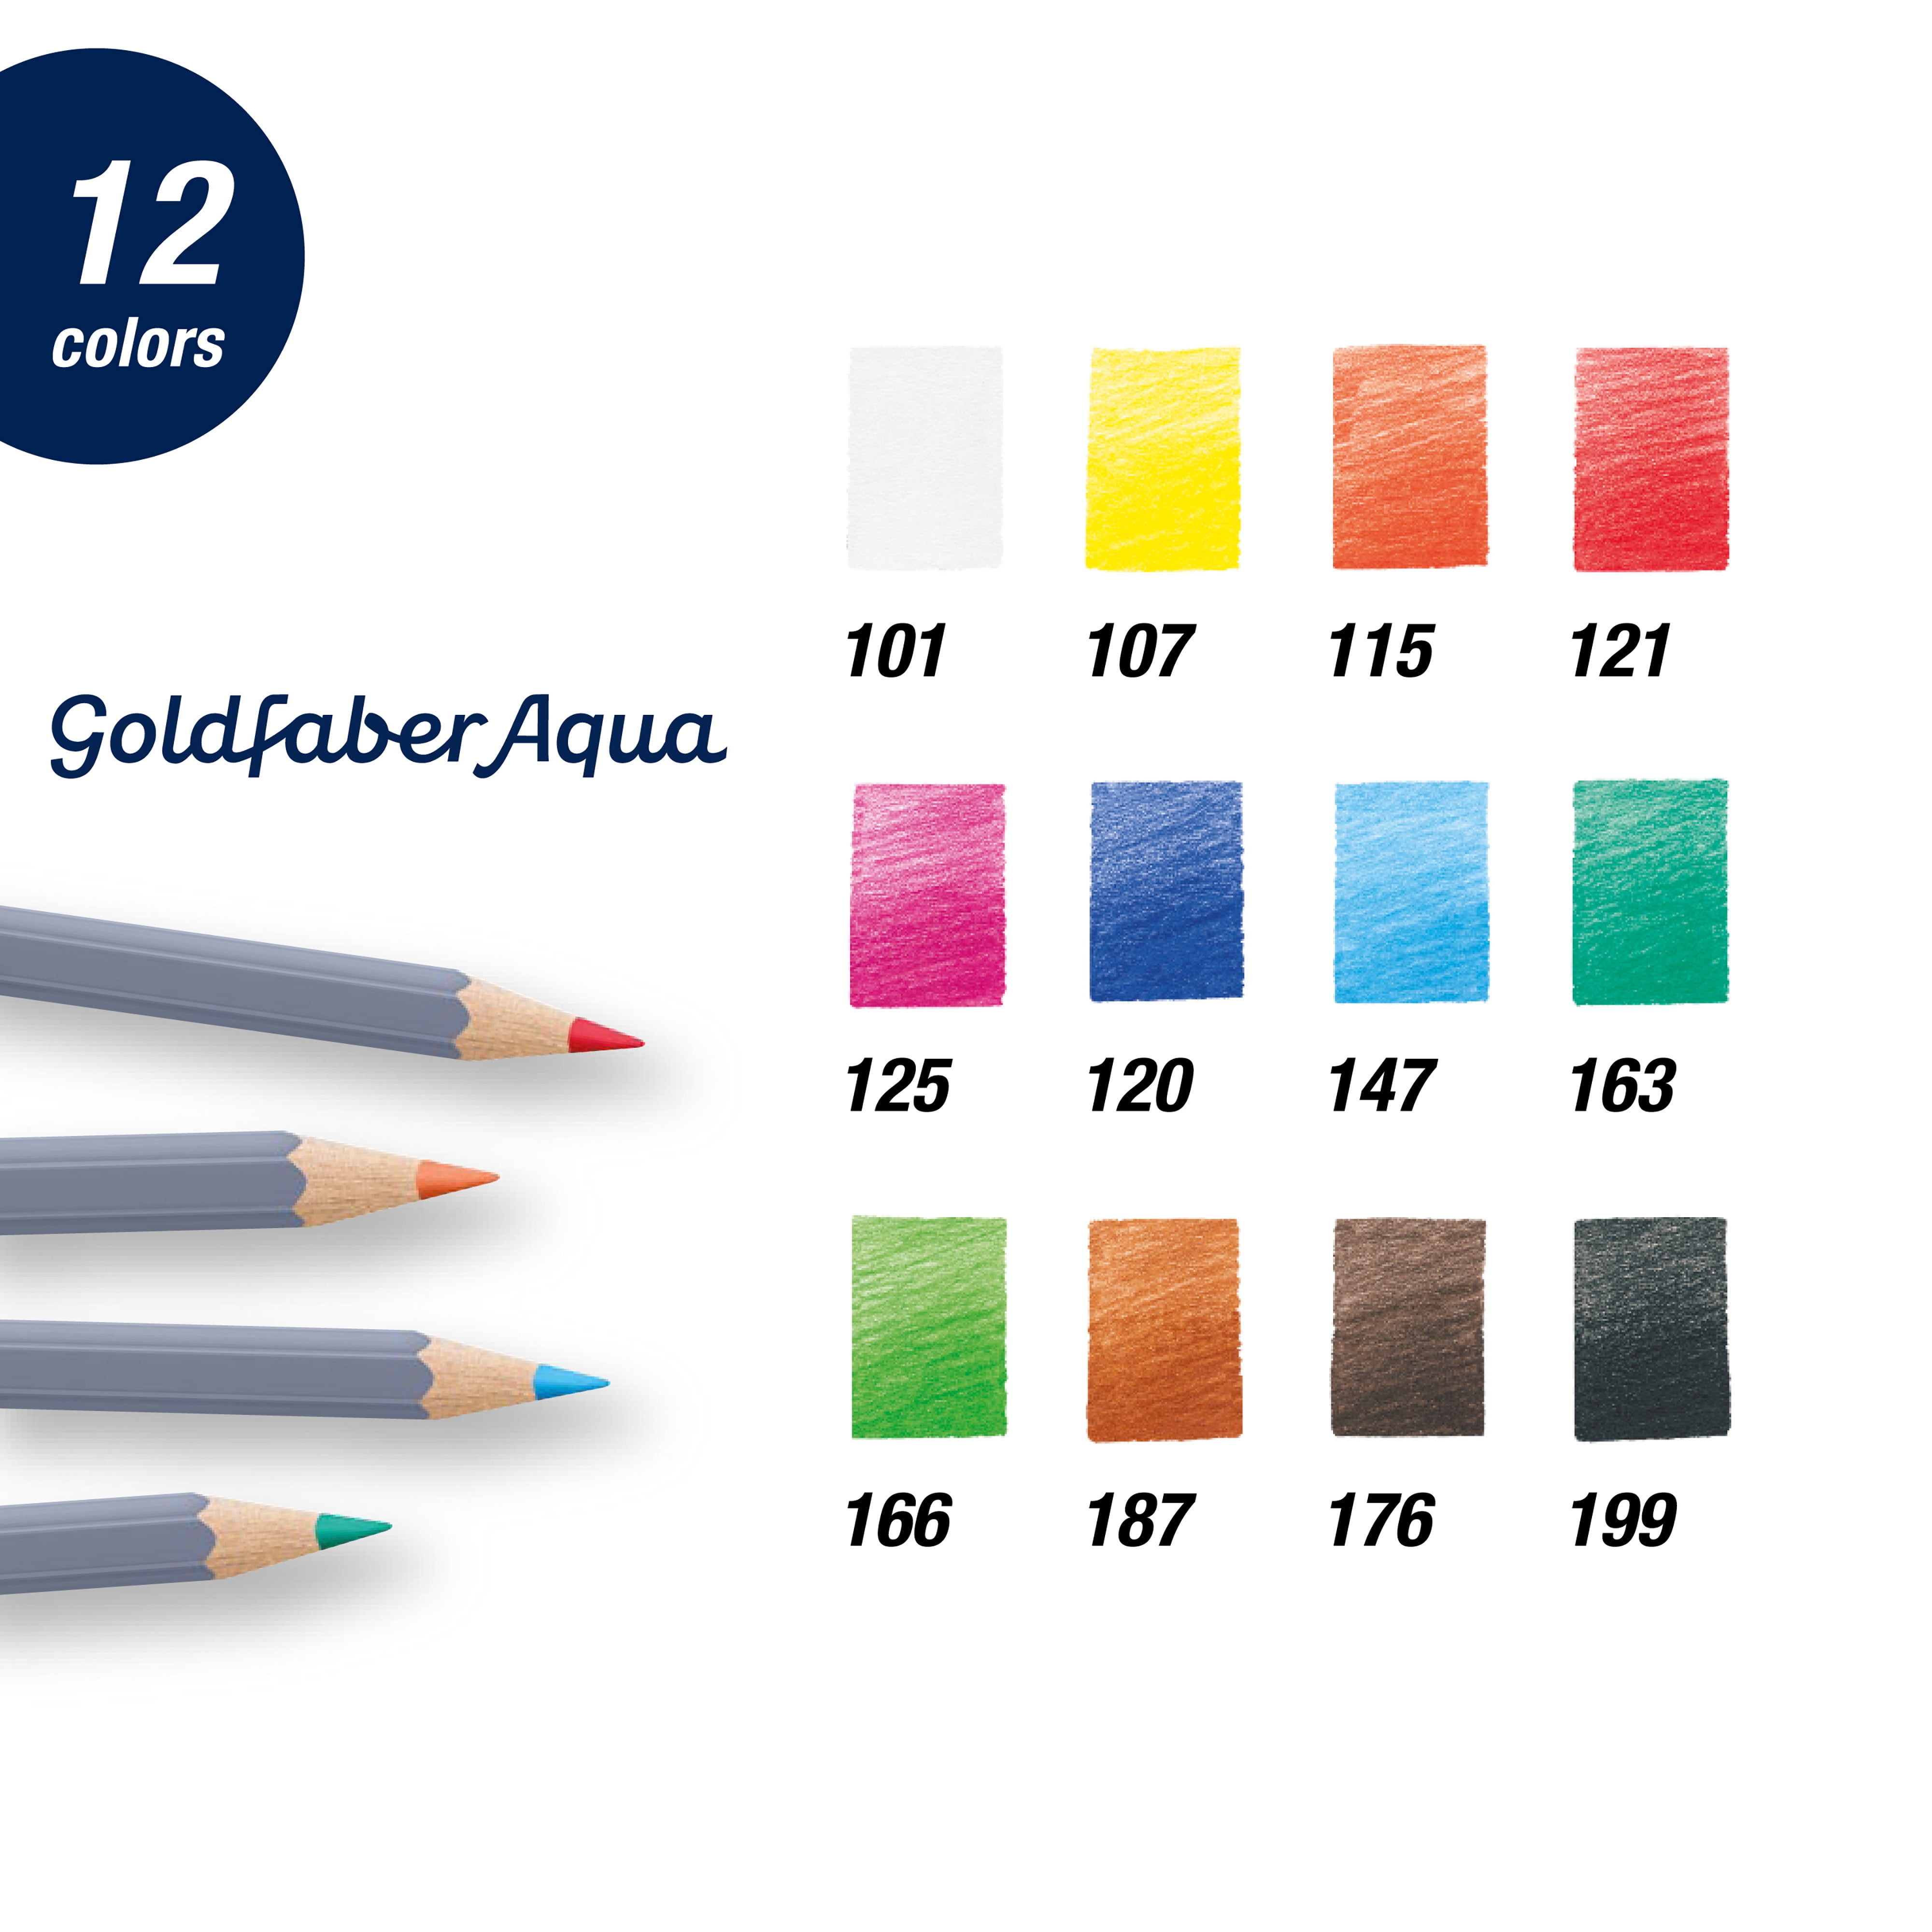 Faber-Castell Goldfaber Aqua Watercolor Pencils Tin Set - 20445557